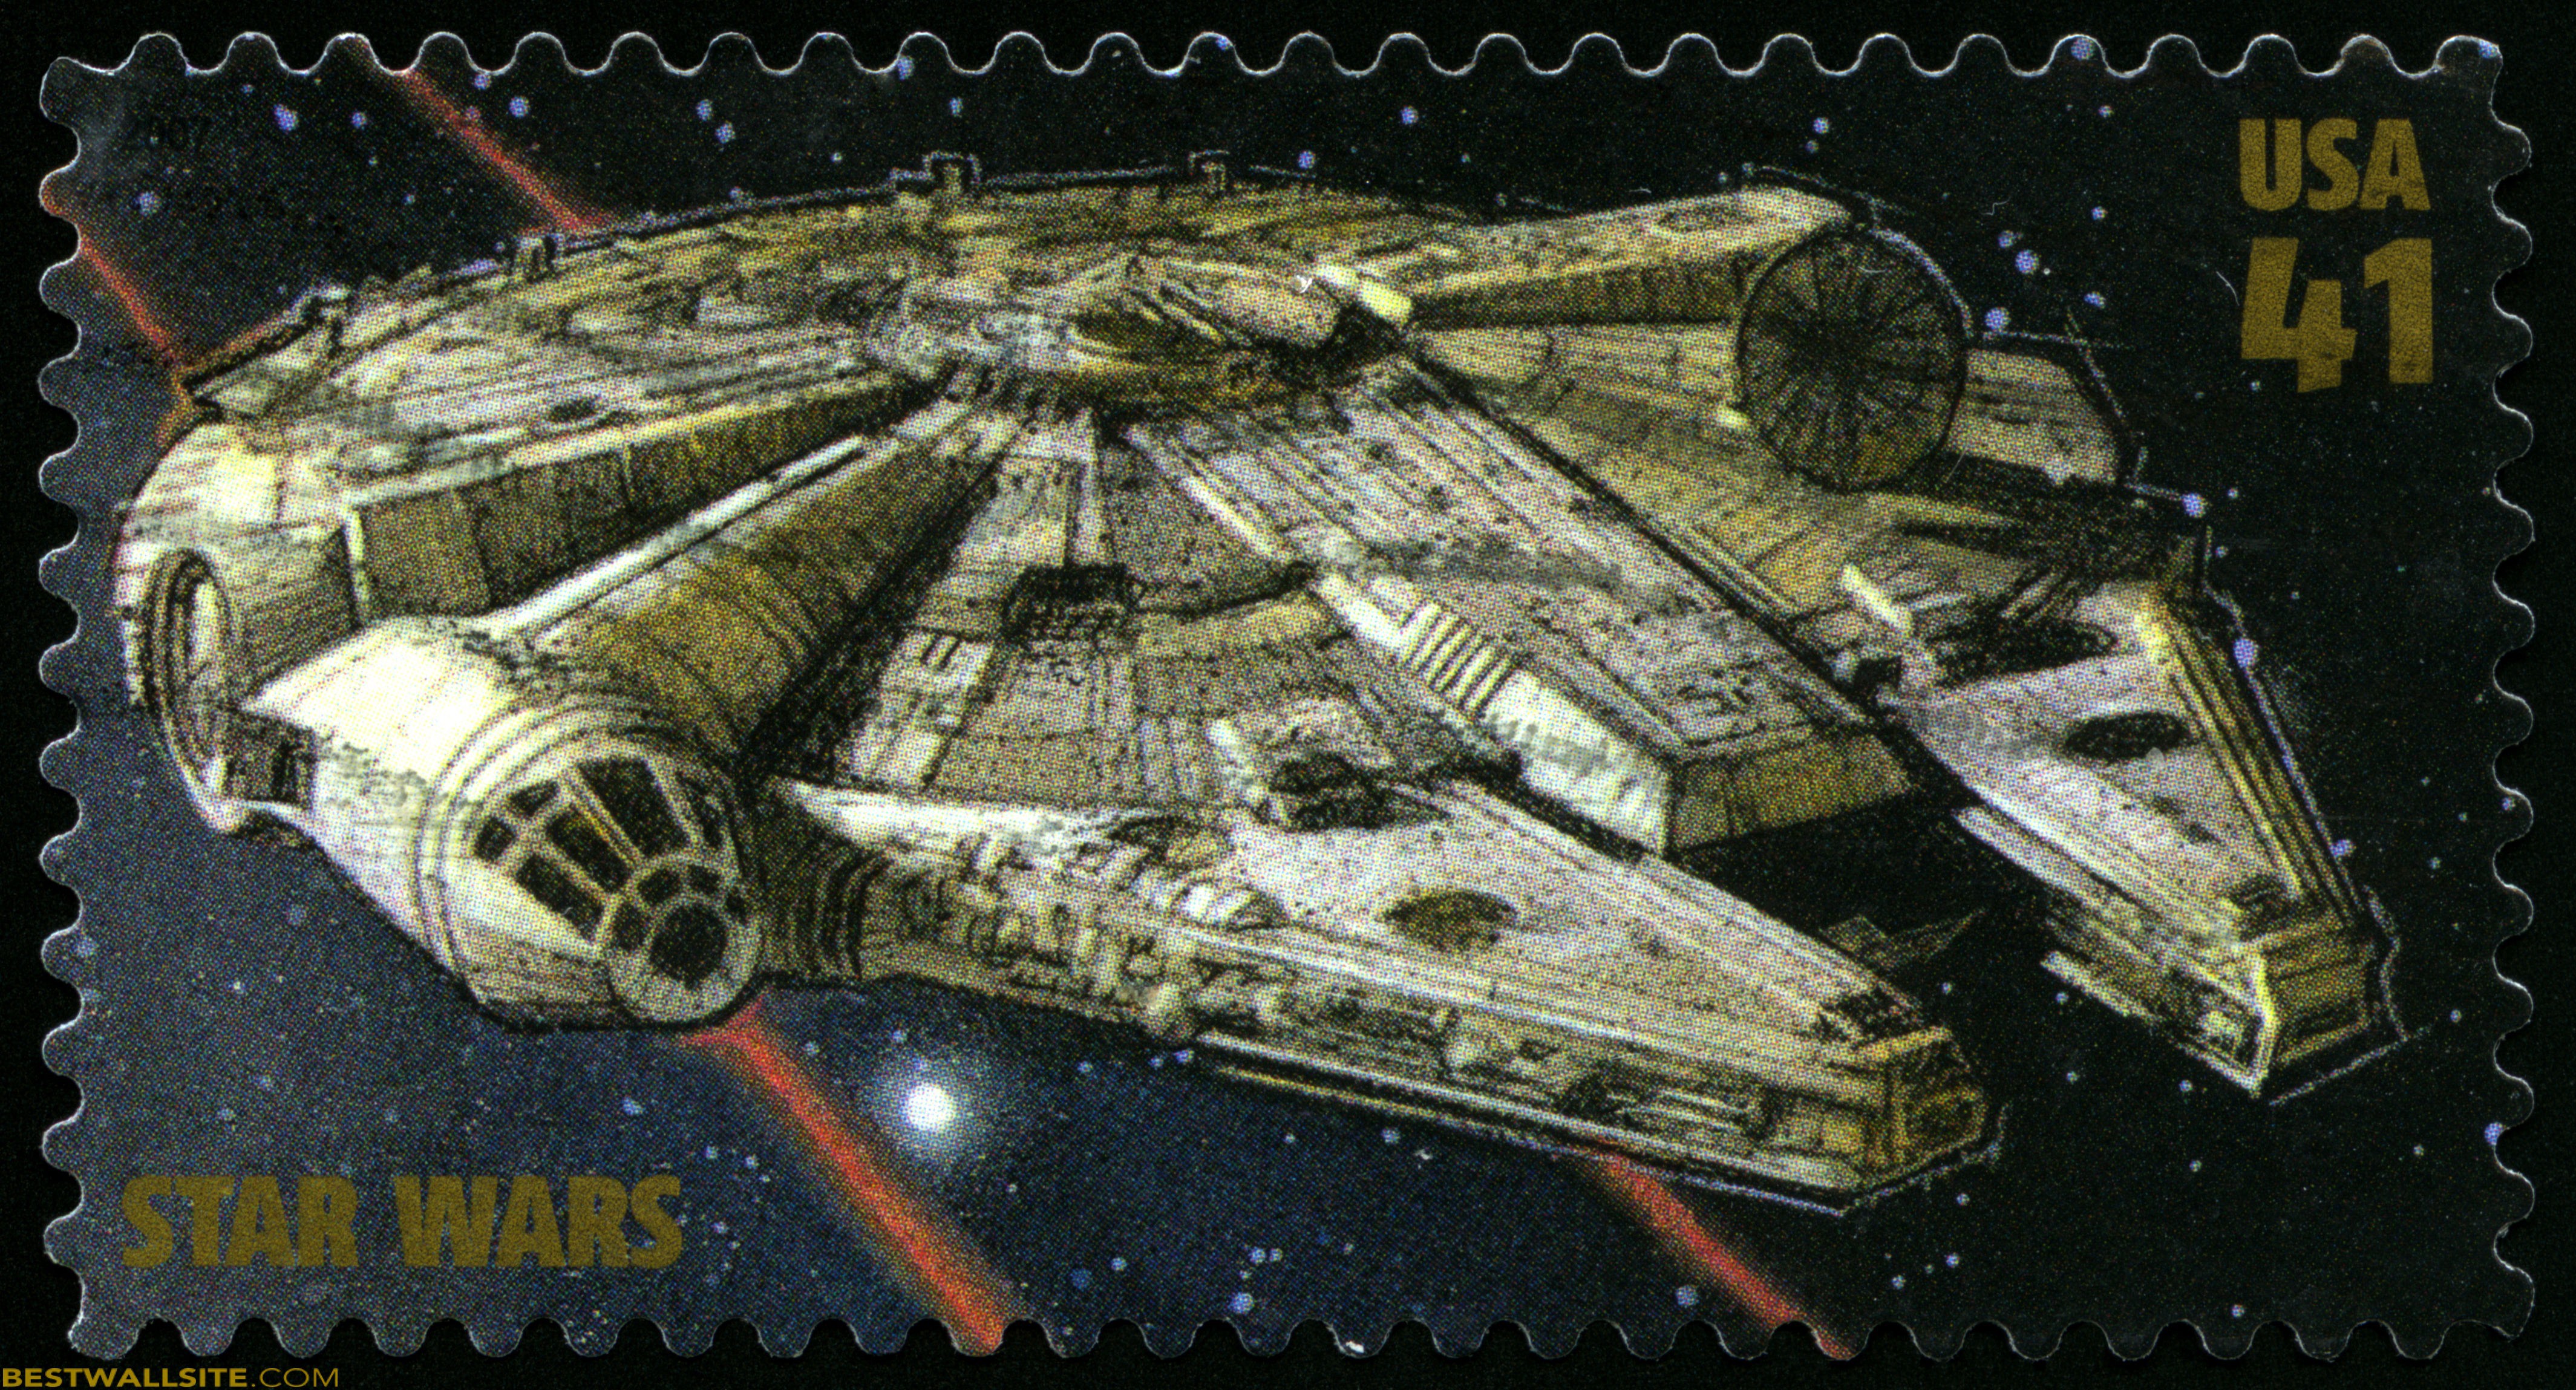 Millennium Falcon Star Wars Postage Stamp | BestWallSite.com